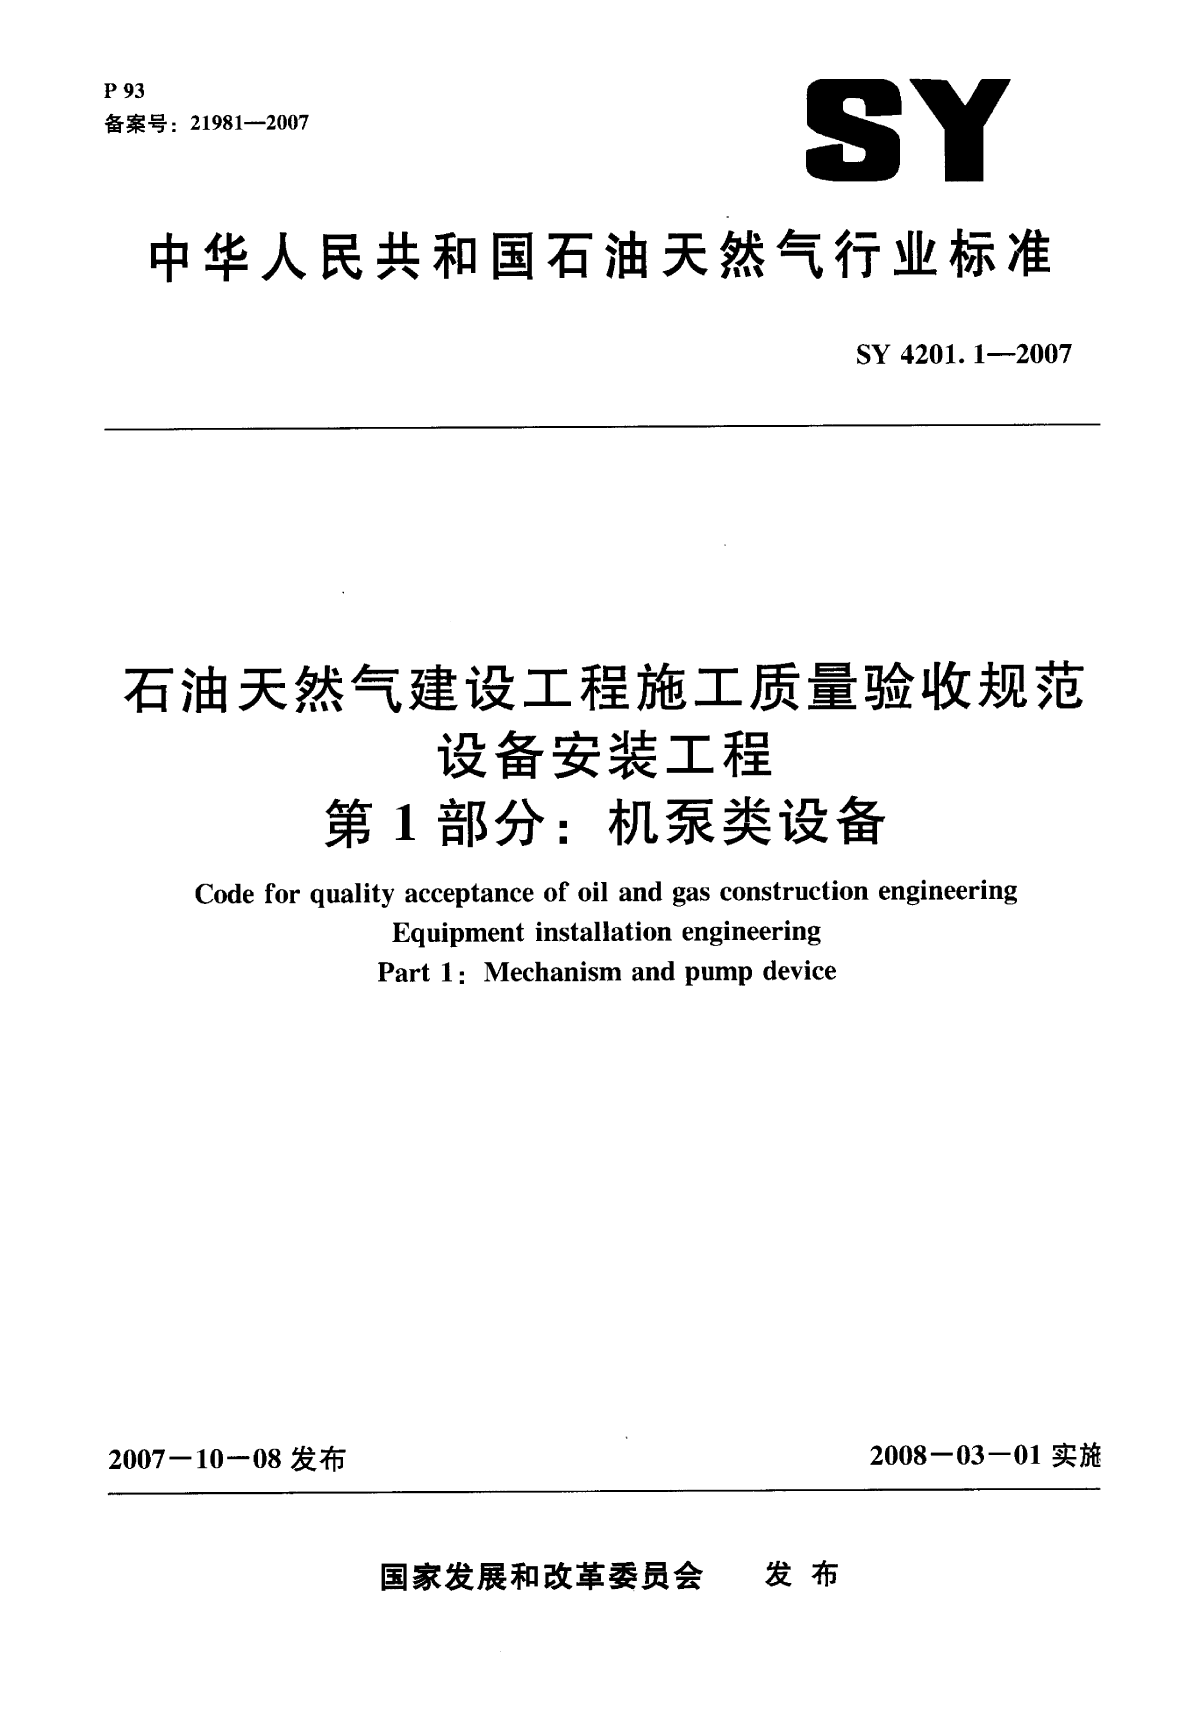 1机泵设备SY4201.1-2007.pdf